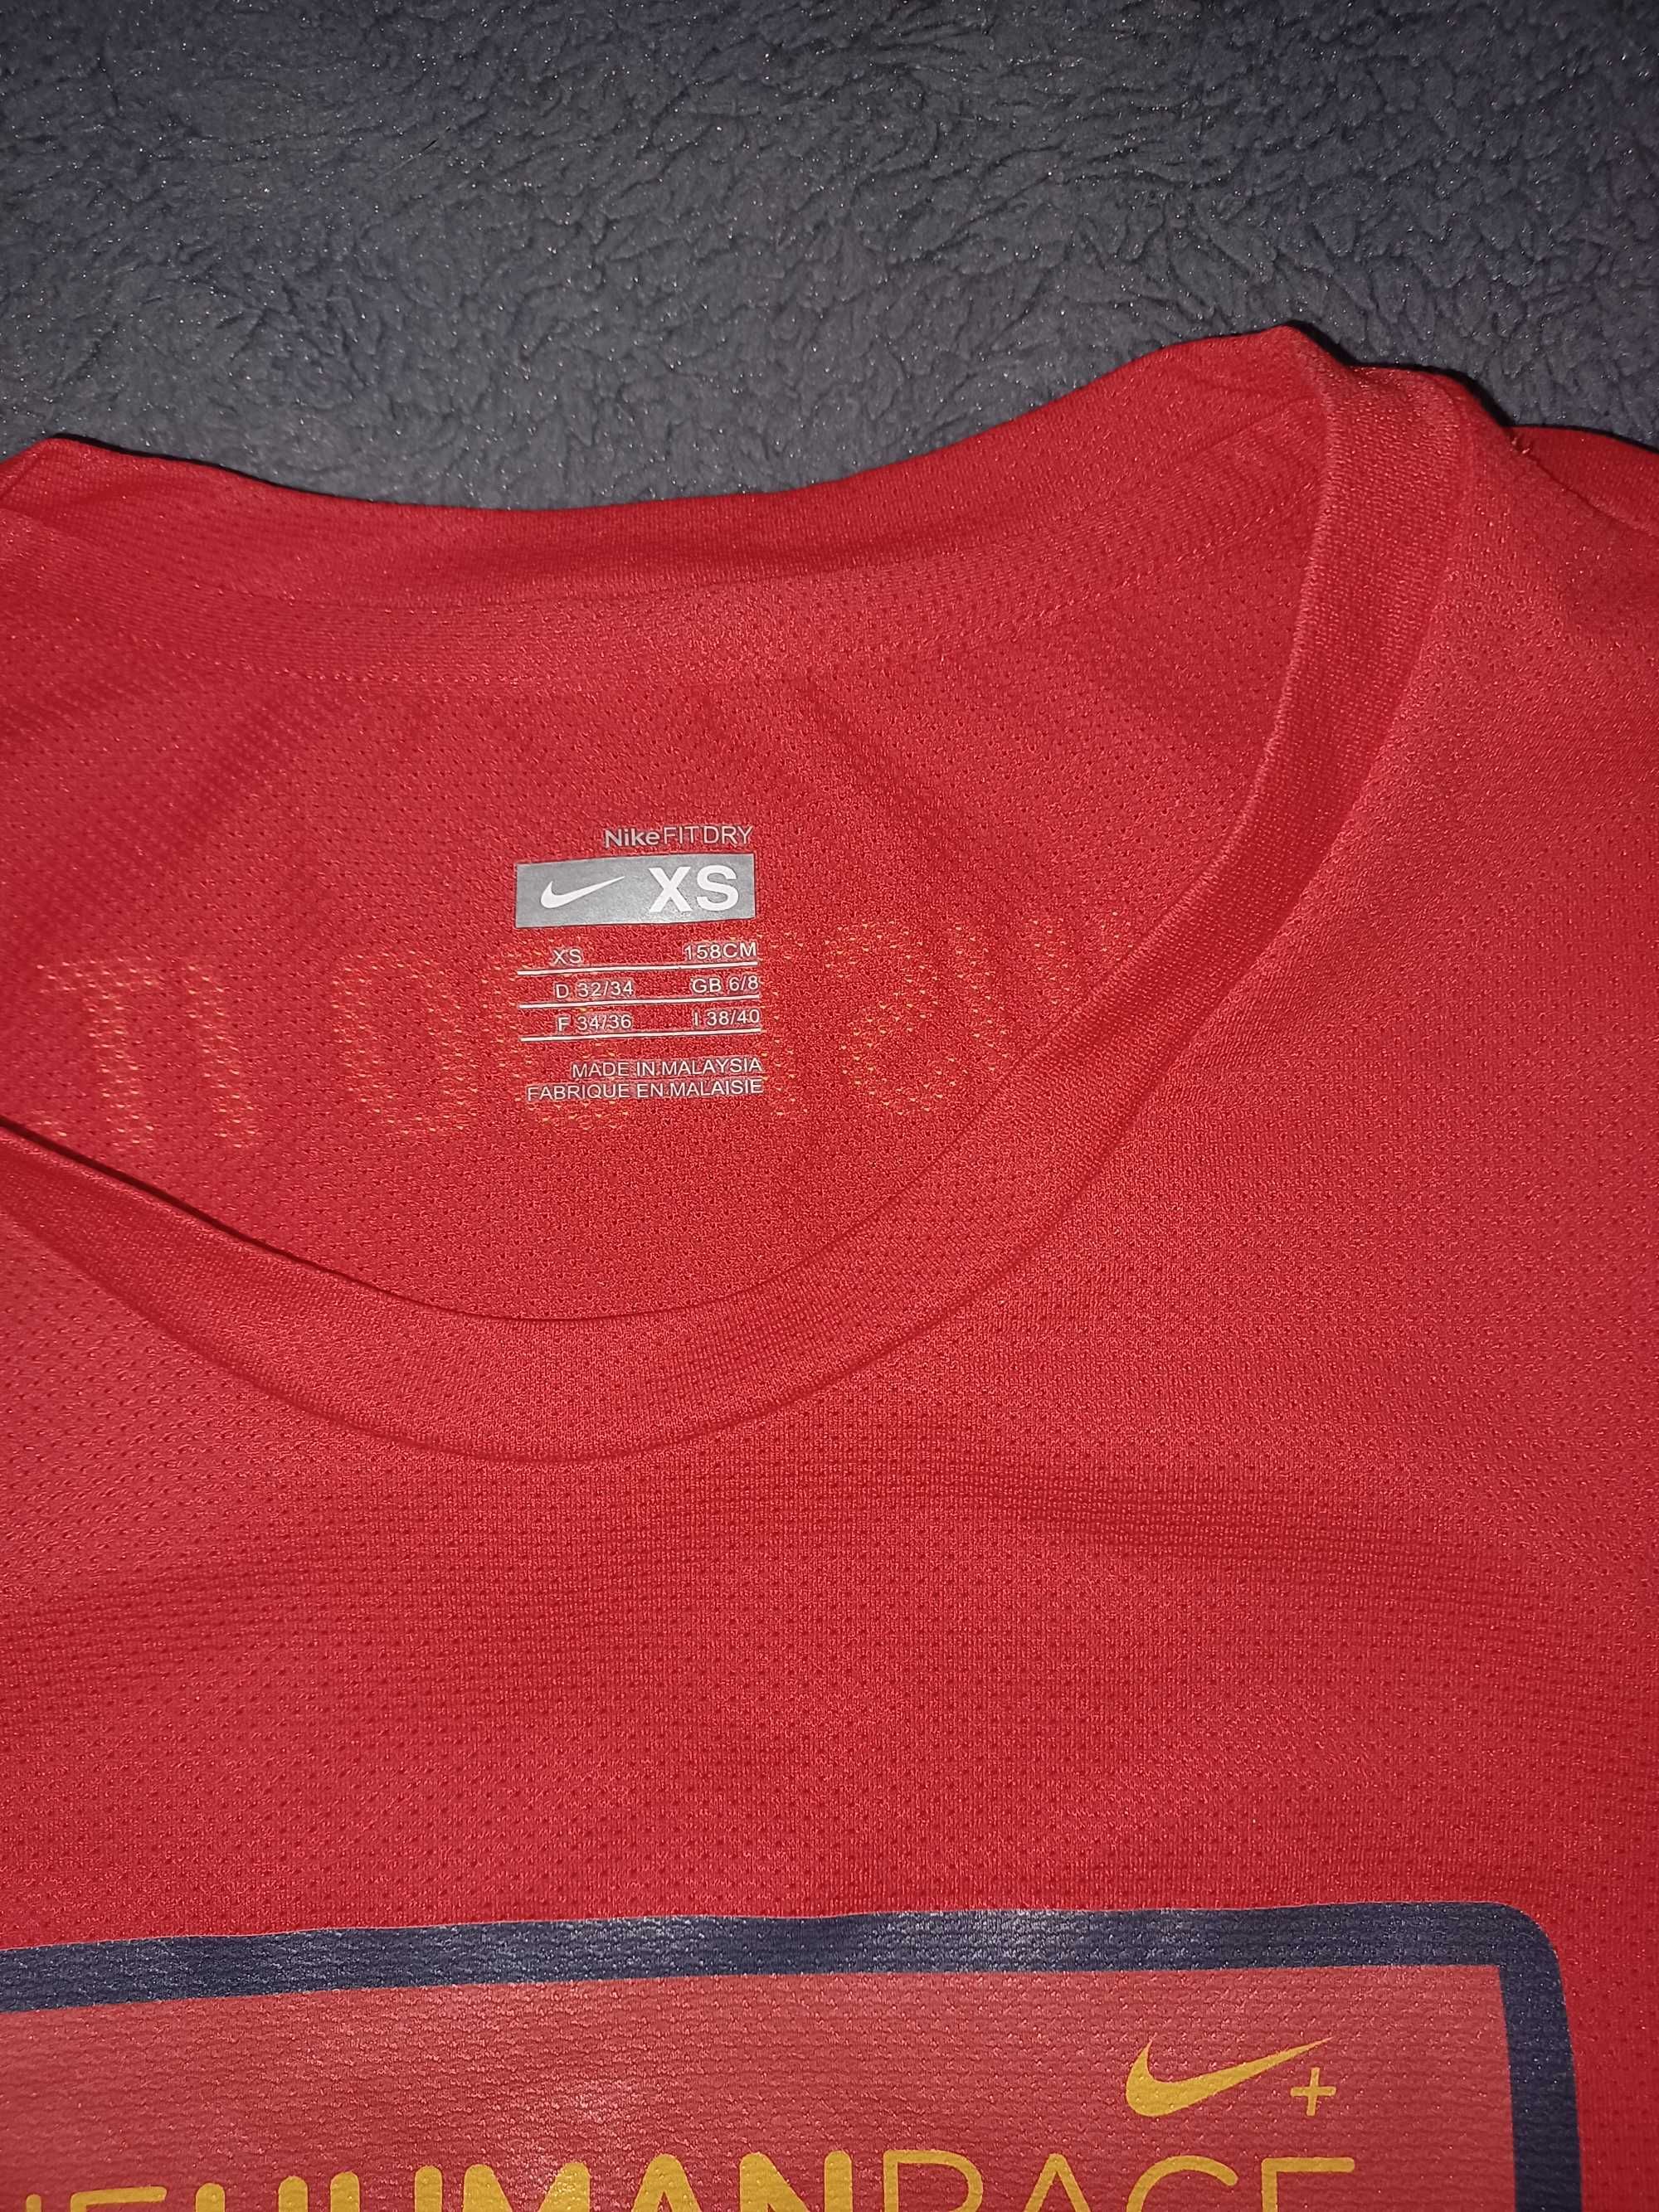 Koszulka Nike rozmiar XS